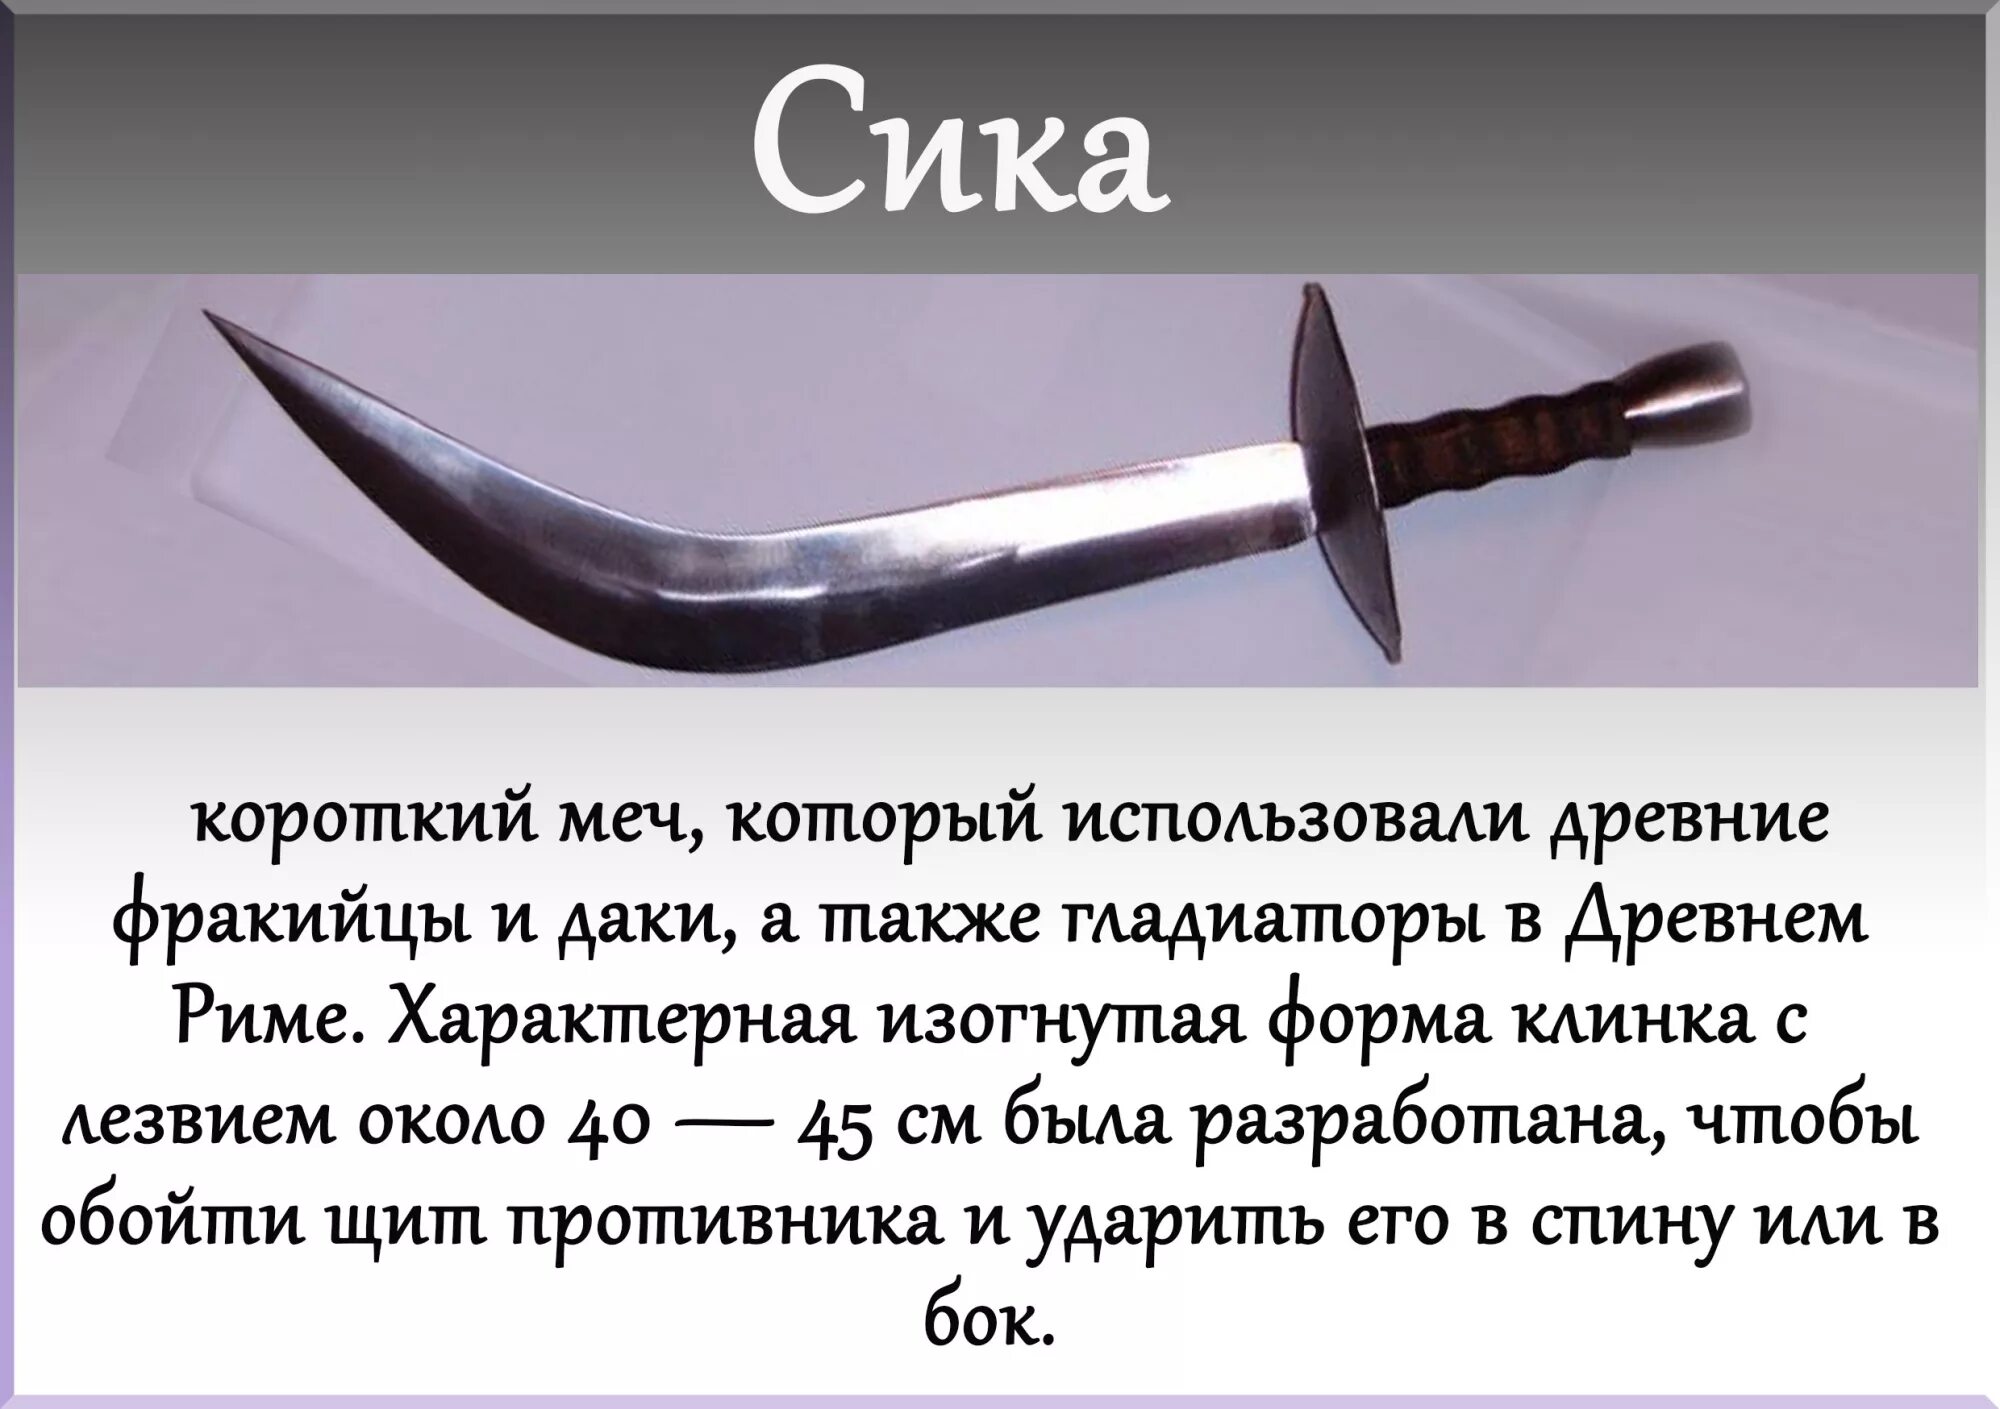 Описание меча 2. Фракийский меч Сика. Фракийский кинжал Сика. Типы холодного оружия. Виды хорододного оружия.